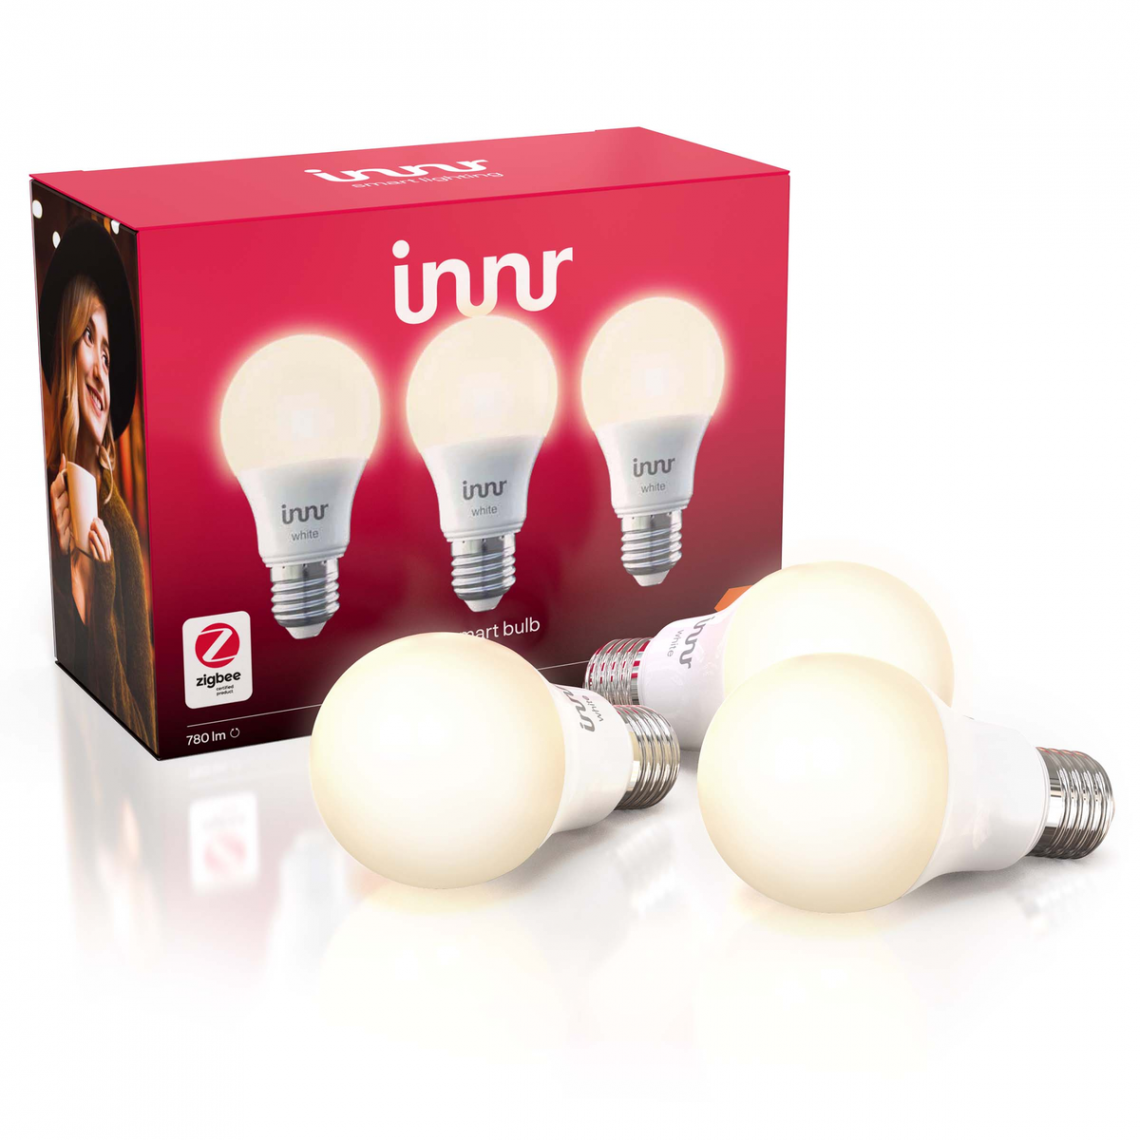 Innr - Ampoule LED connectée - E27 - Blanc Chaud - 2700K (TrioPack) - Ampoule connectée